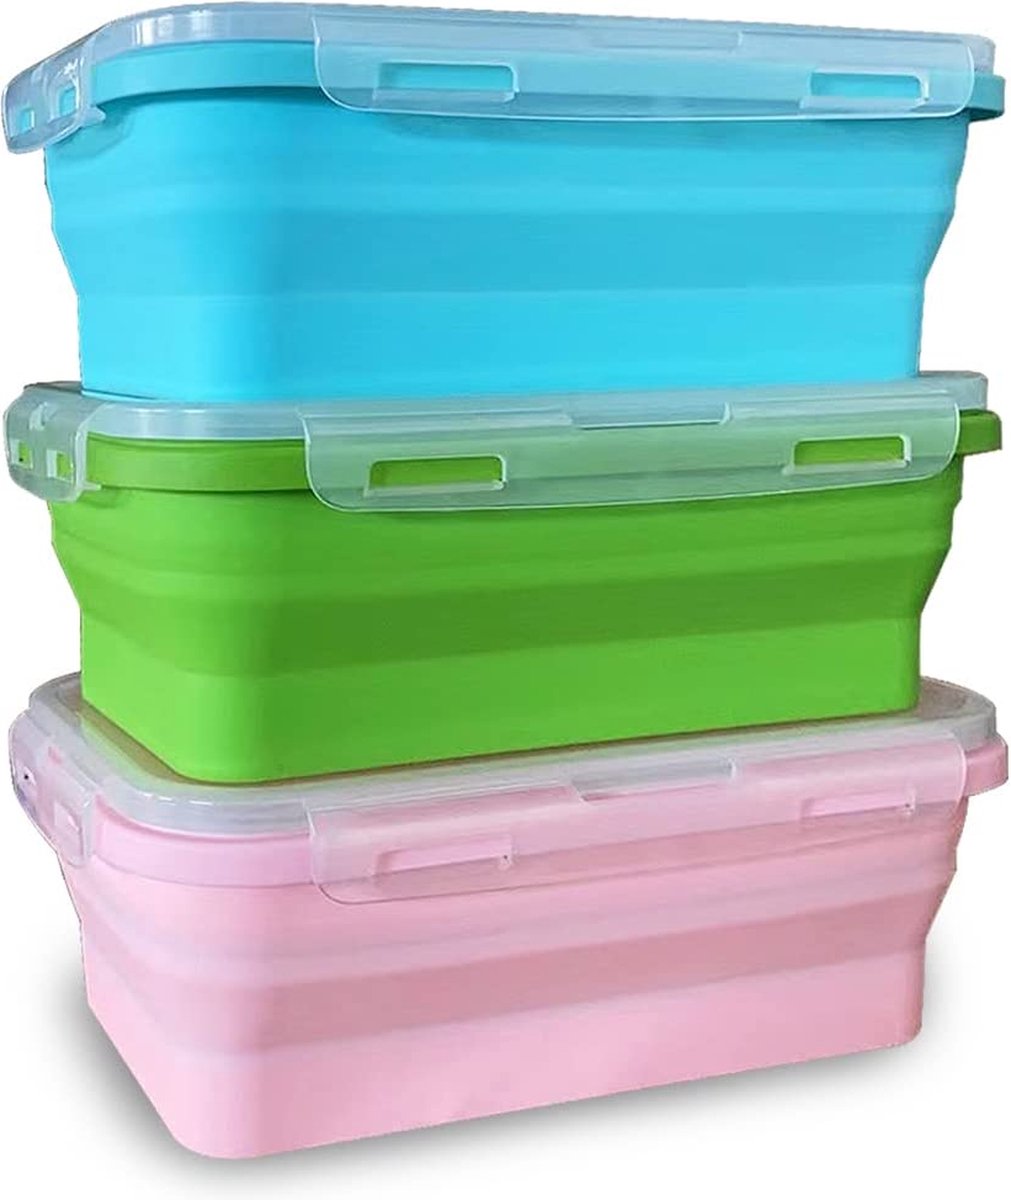 Siliconen voedselopslagcontainers met deksels - 3-pack set 1200 ml siliconen lunchbox herbruikbare ruimtebesparende siliconen containers voor magnetronvriezer vaatwasmachinebestendig BPA-vrij (blauw, roze, groen)